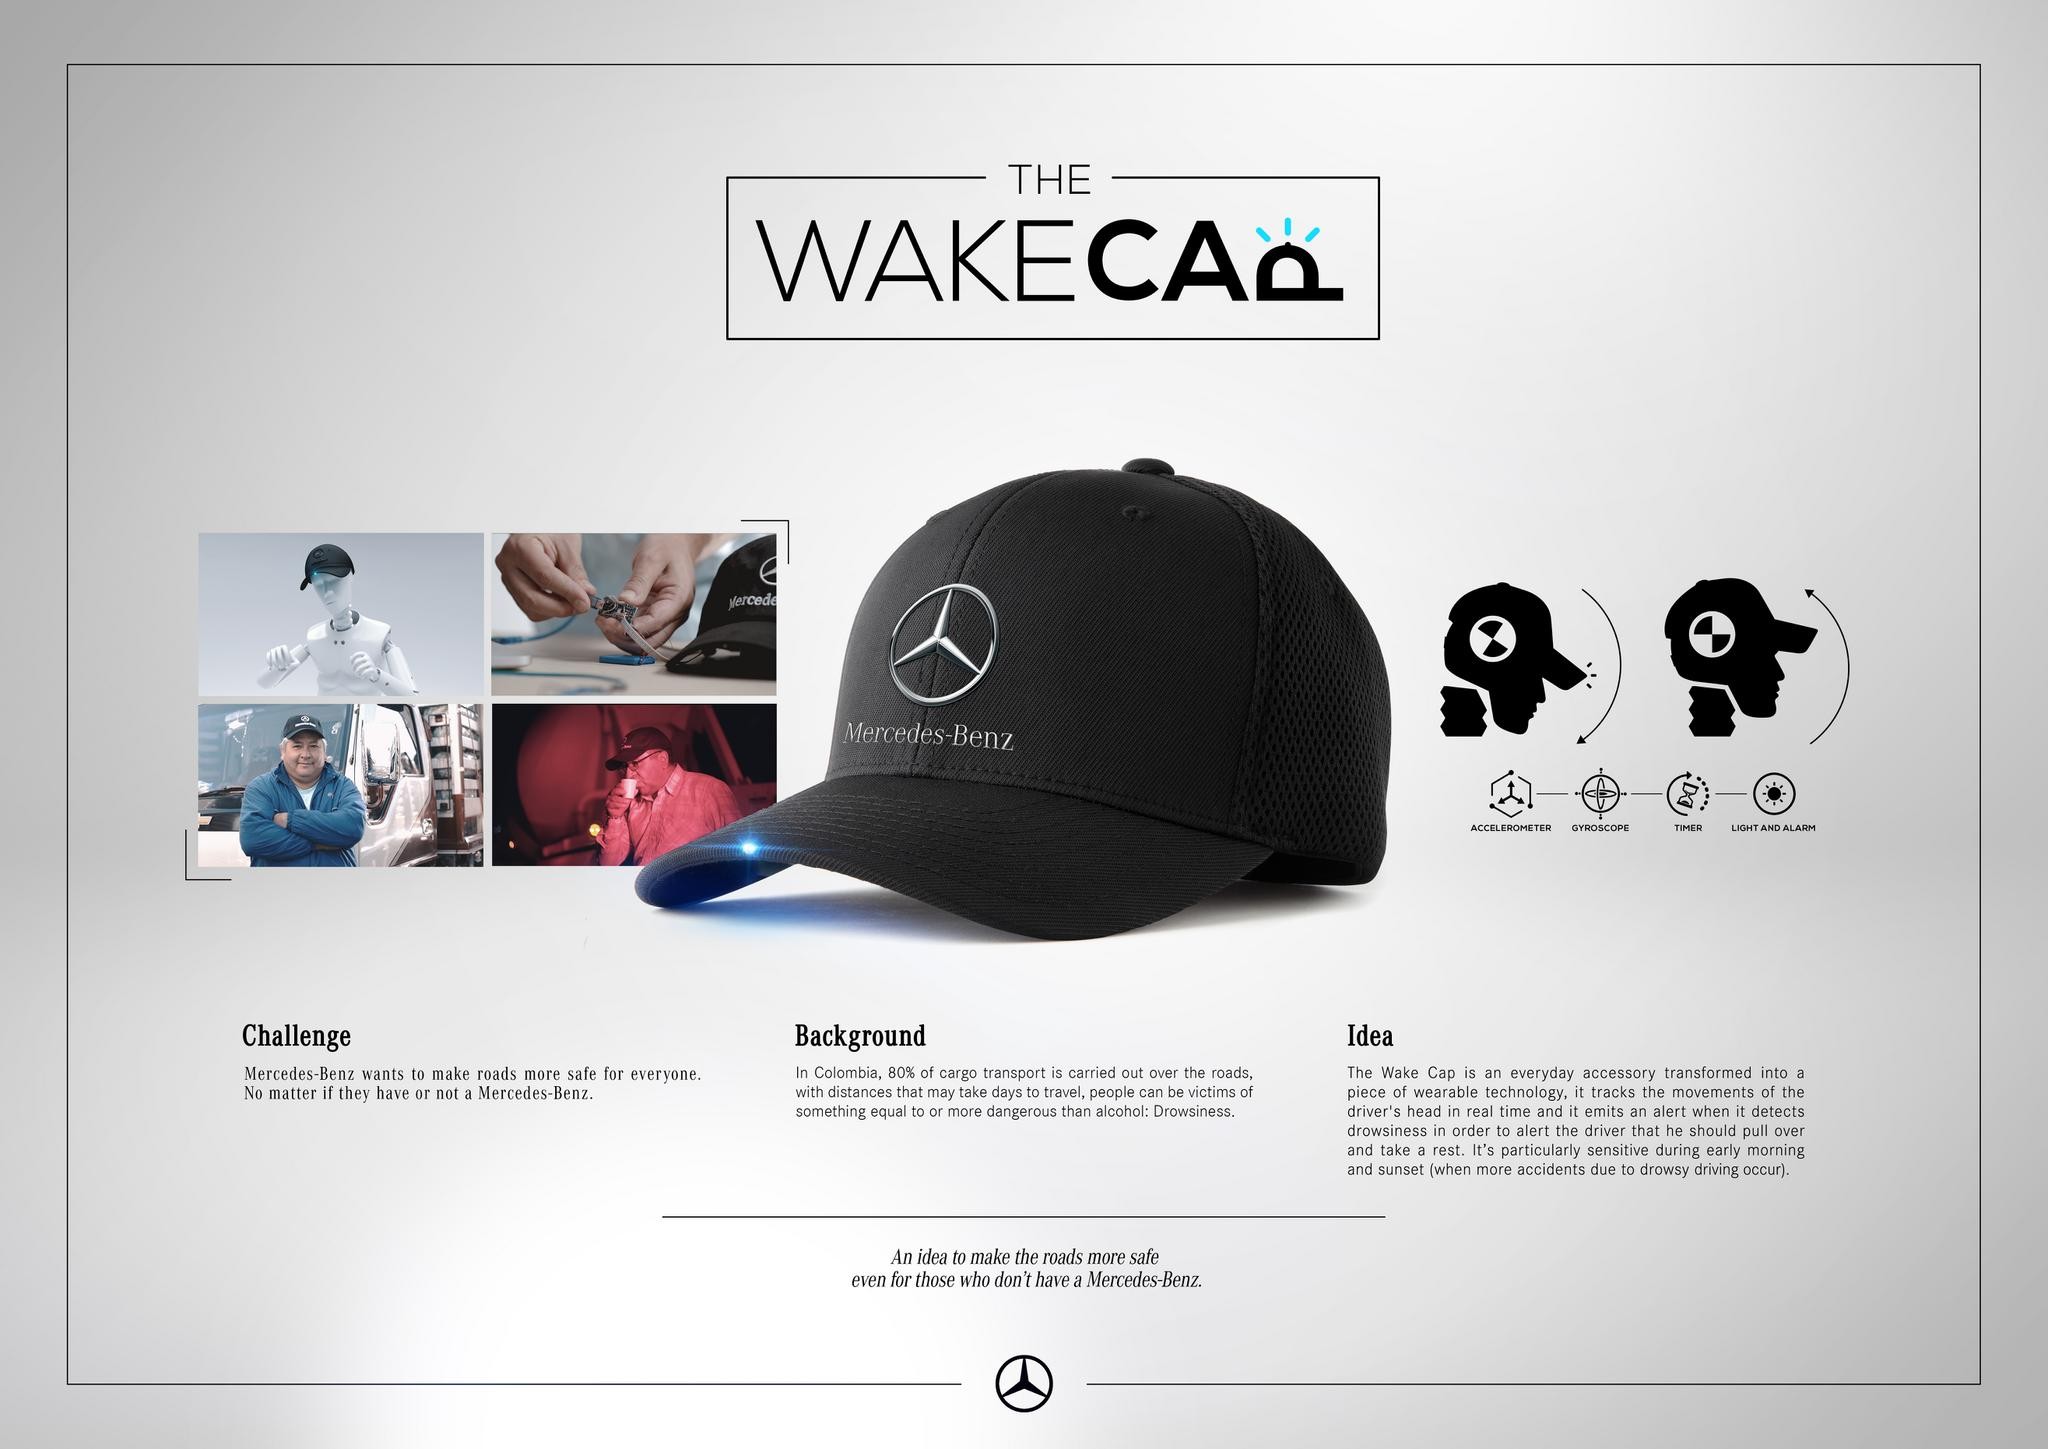 THE WAKE CAP